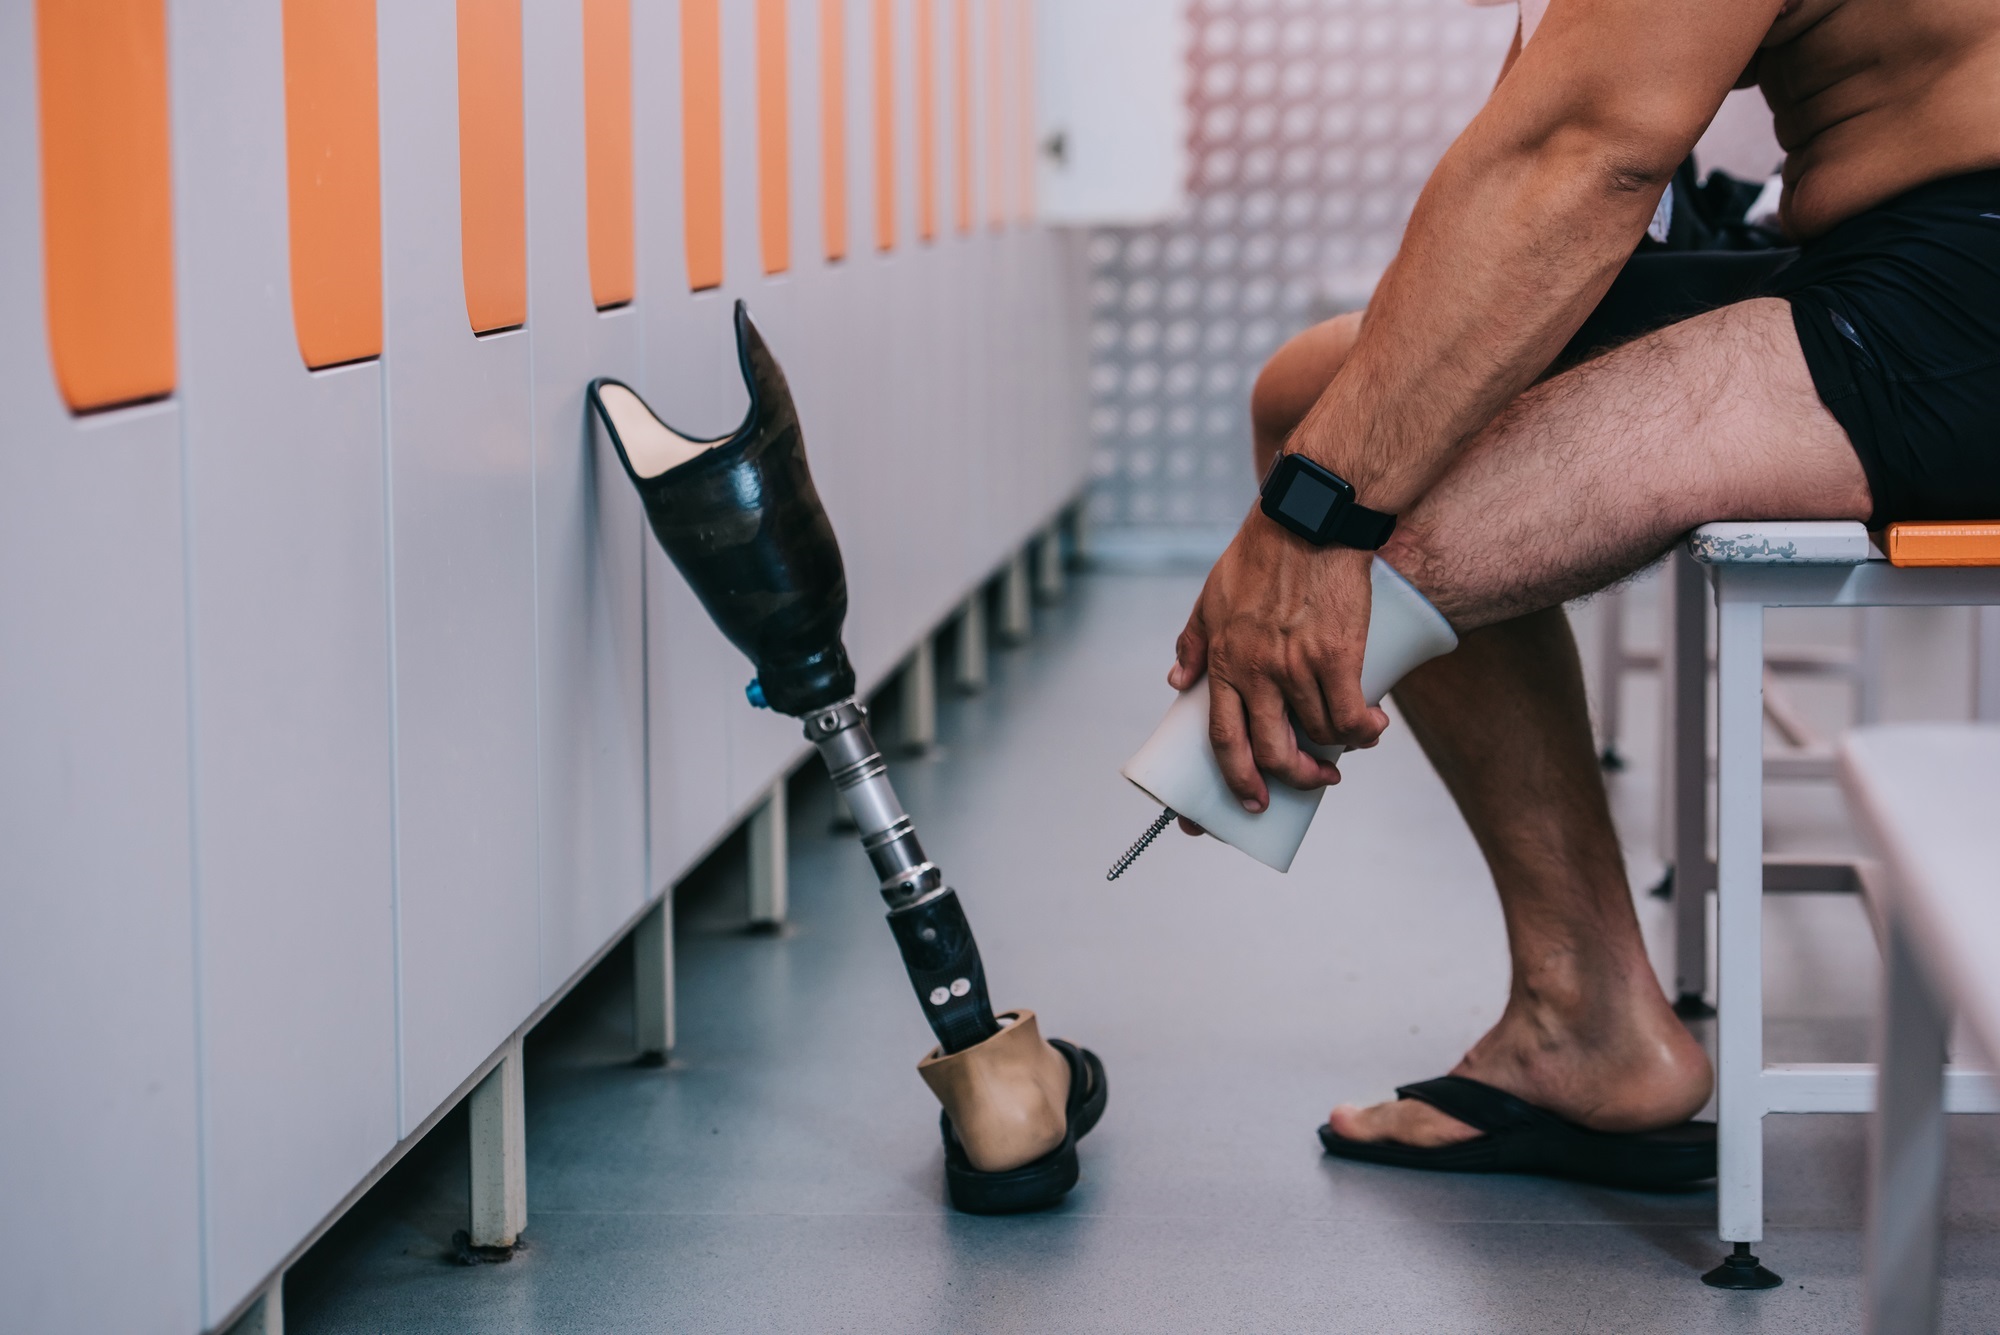 Types Of Prosthetic Legs - Design Talk